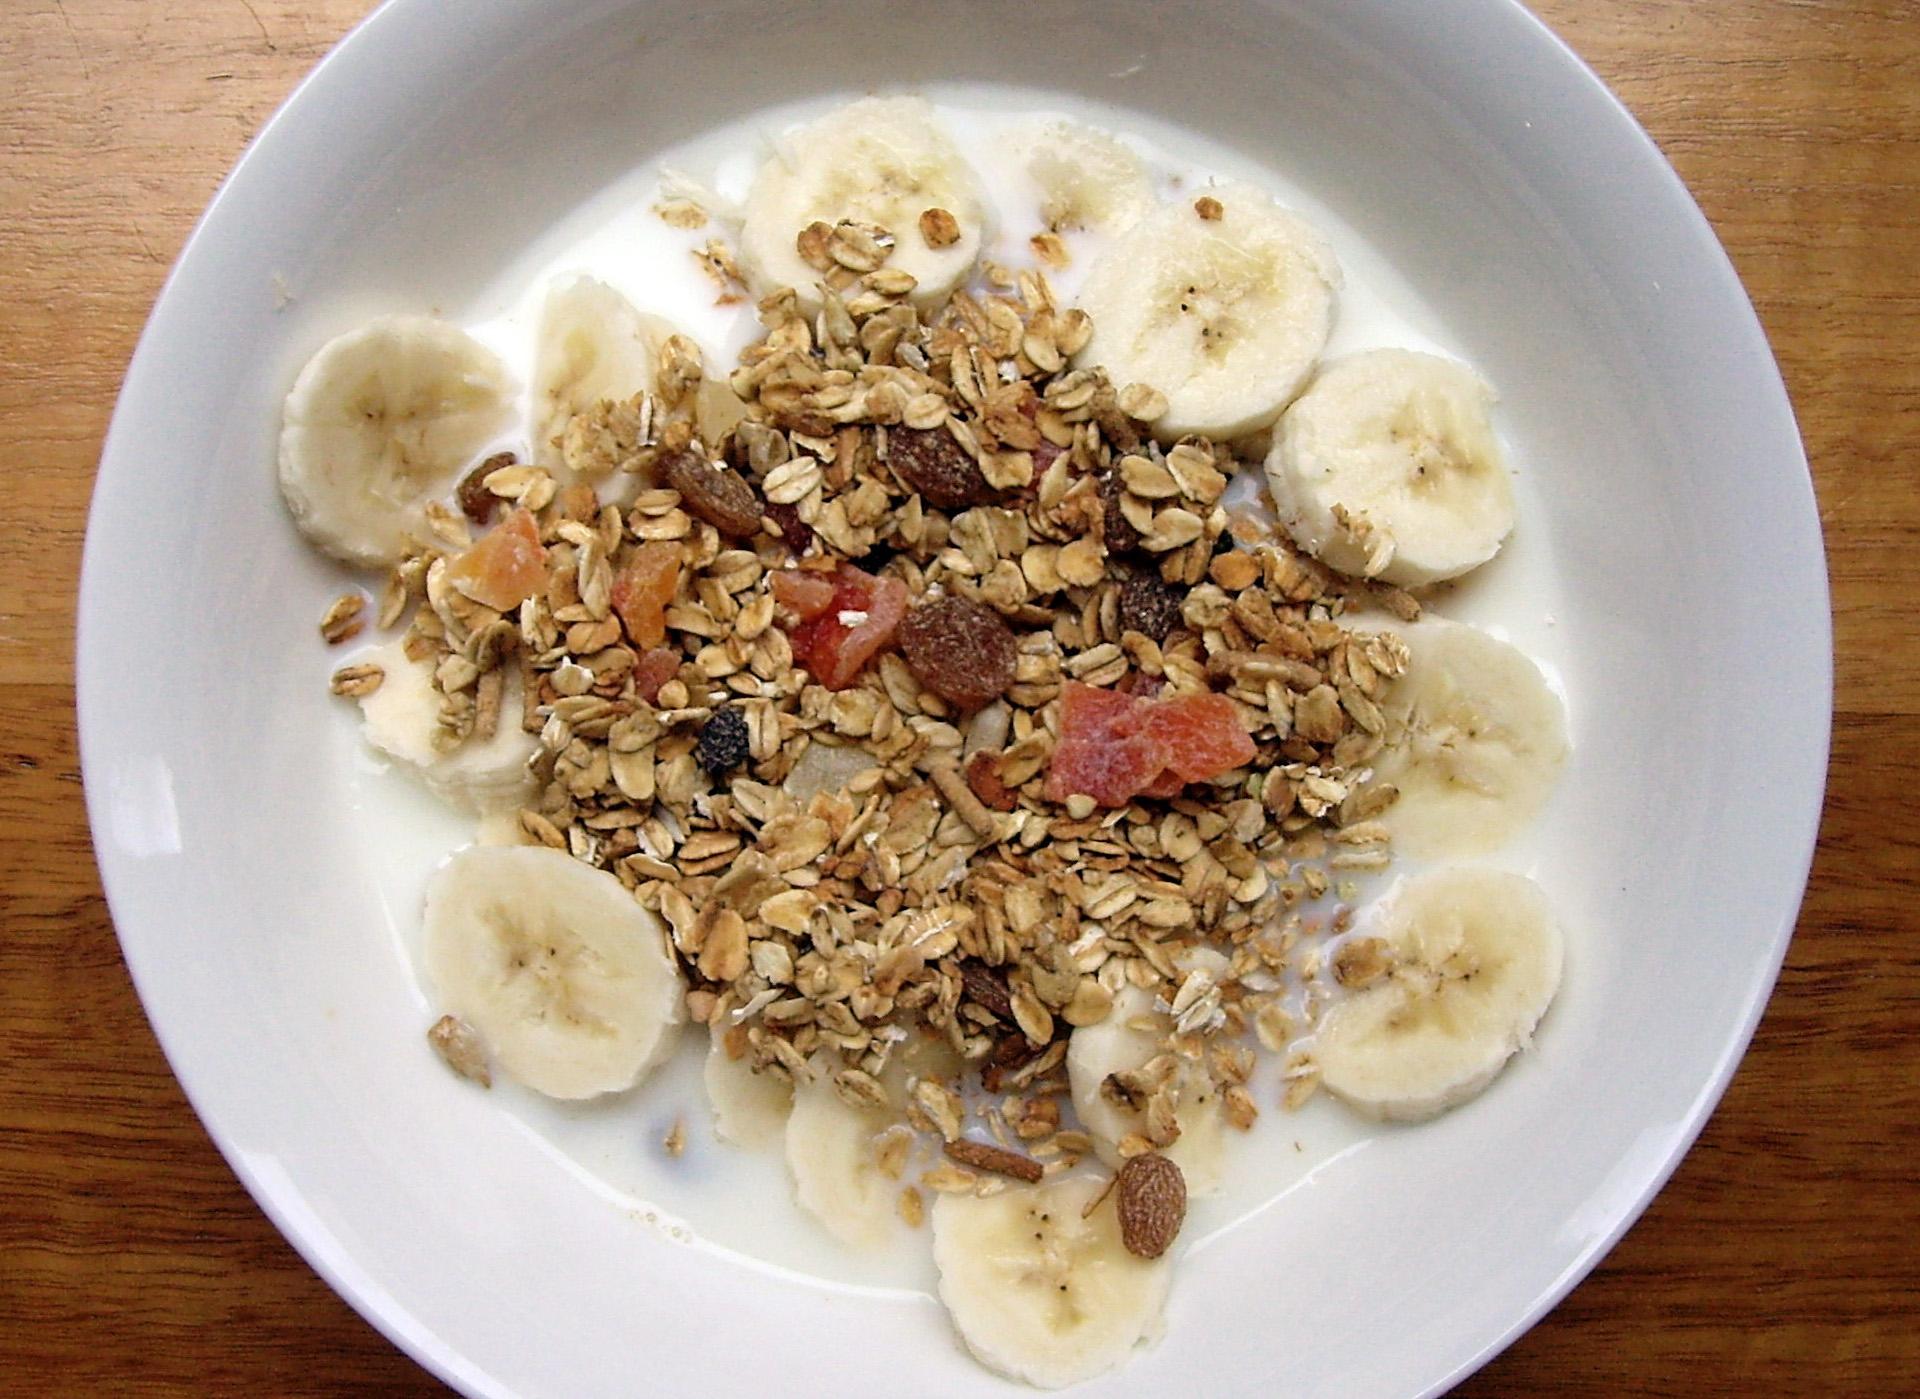  best healthy breakfast ideas